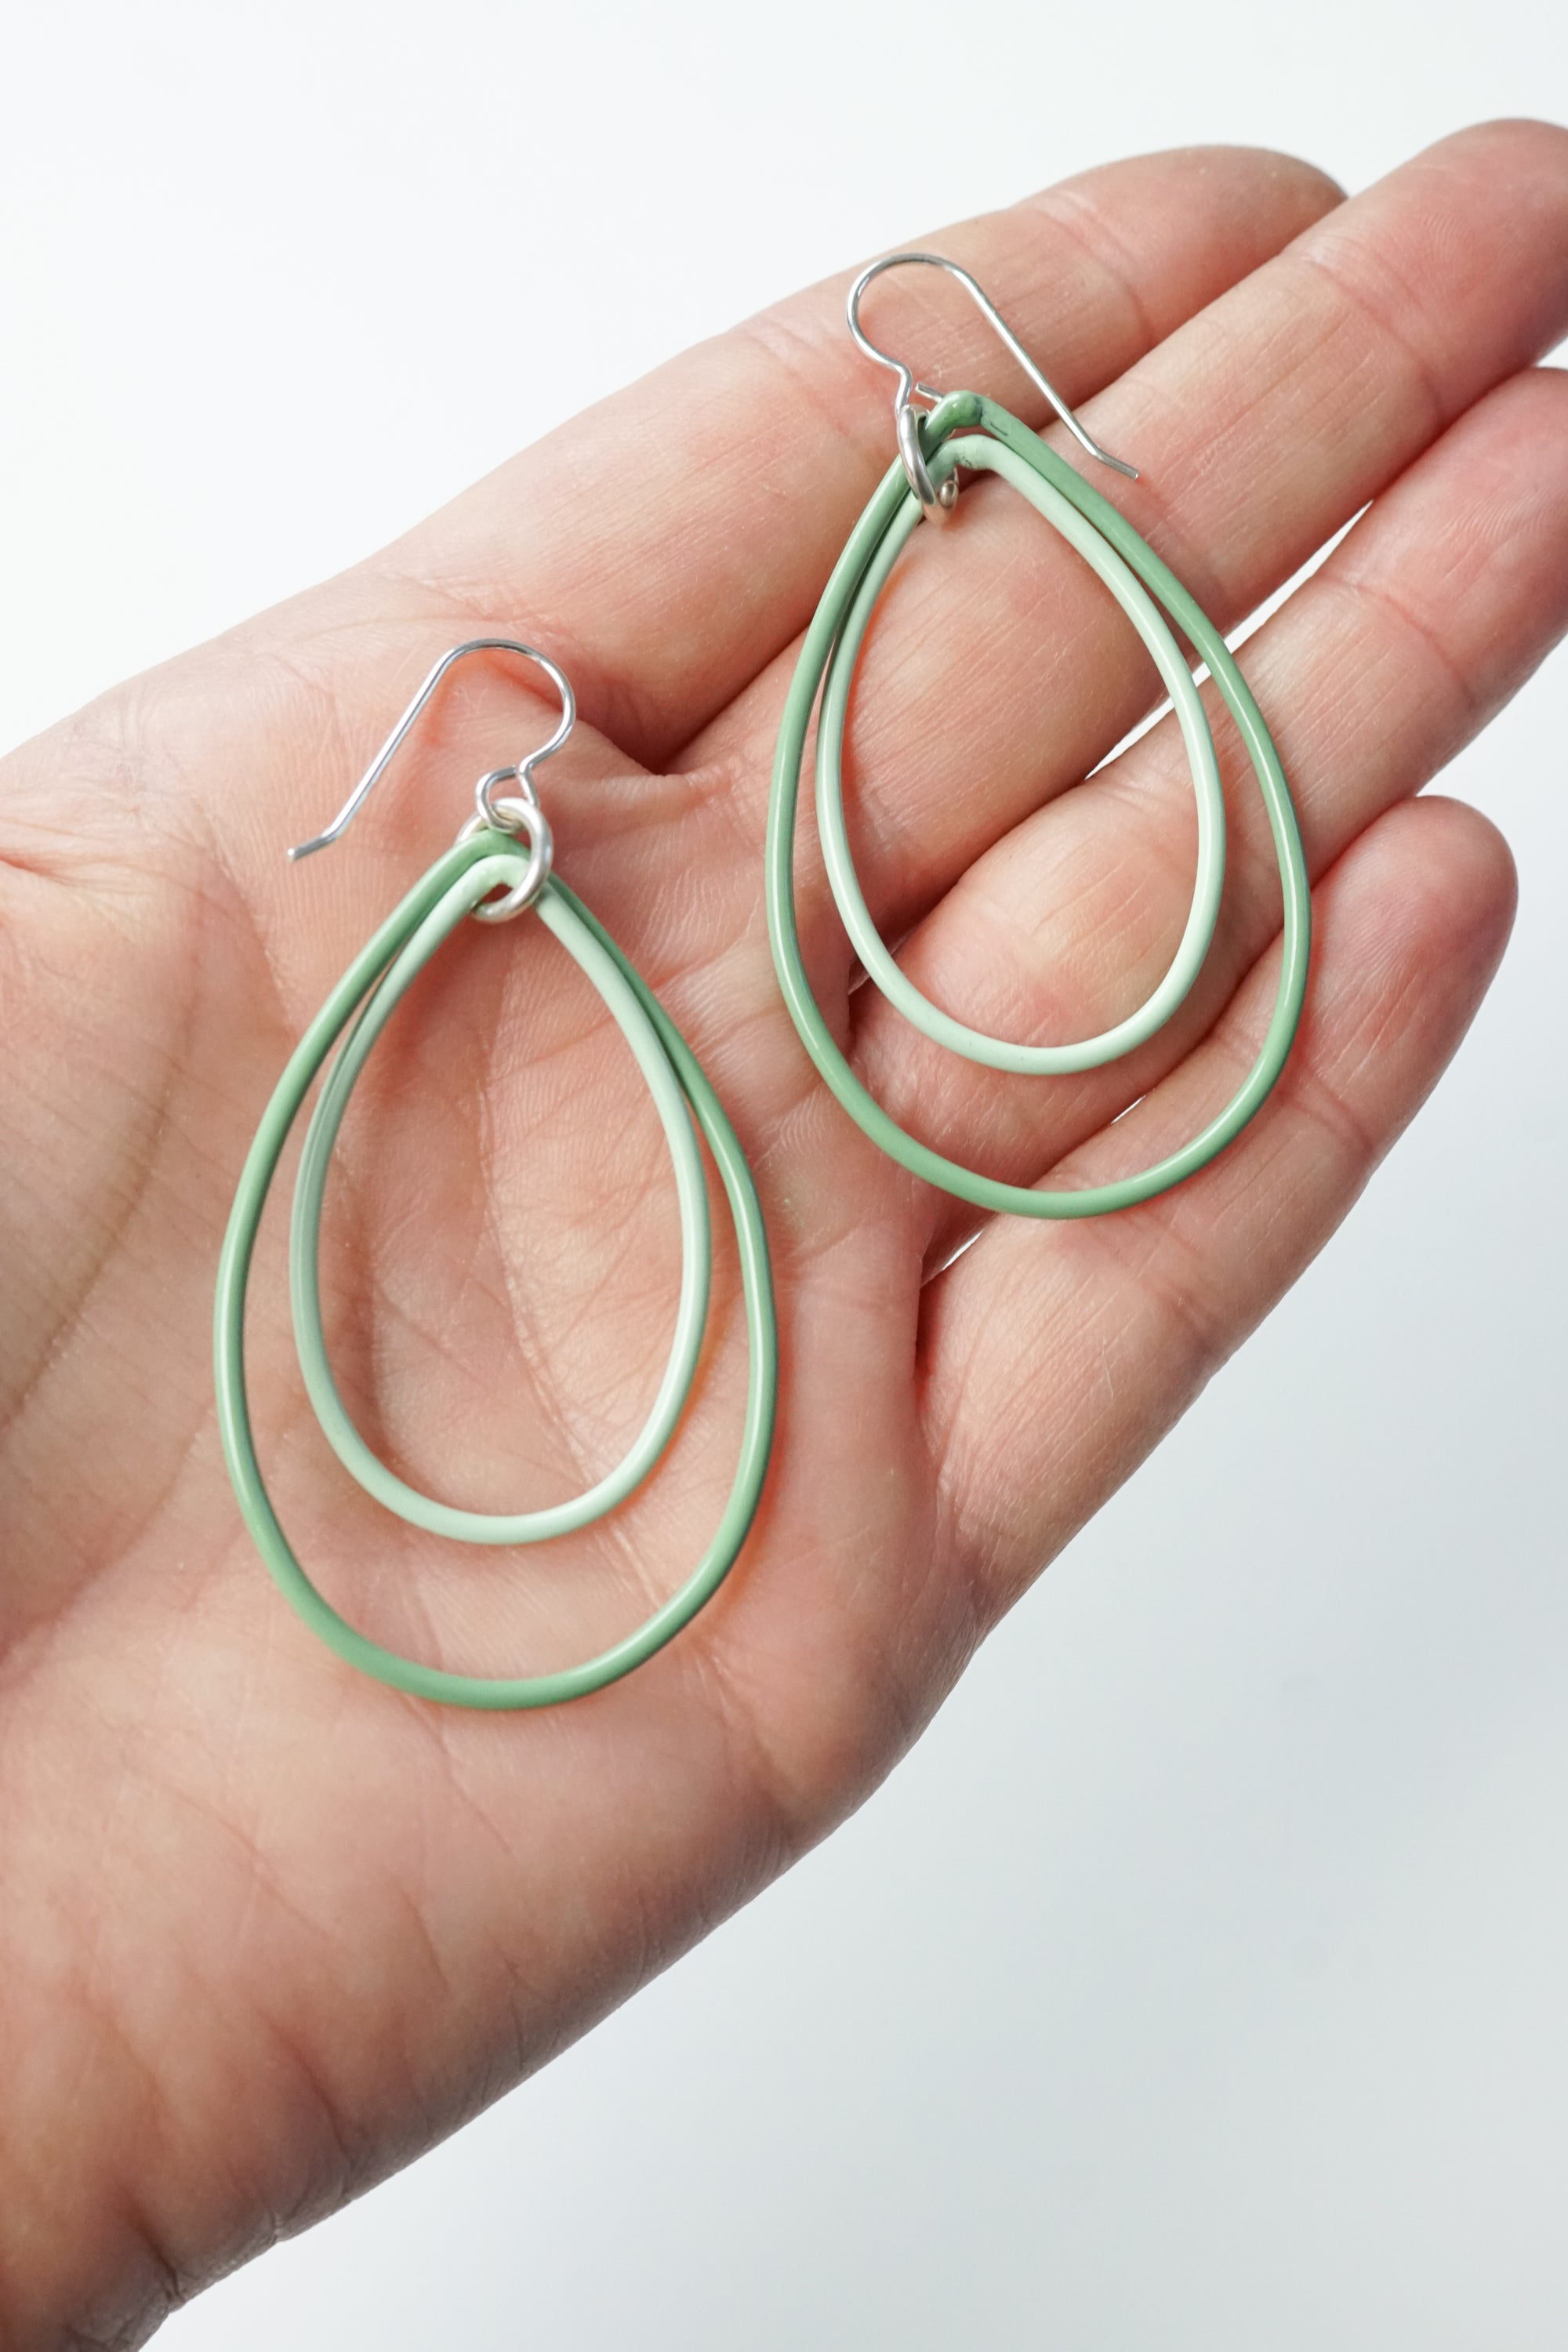 Rachel earrings in Pale Green and Soft Mint